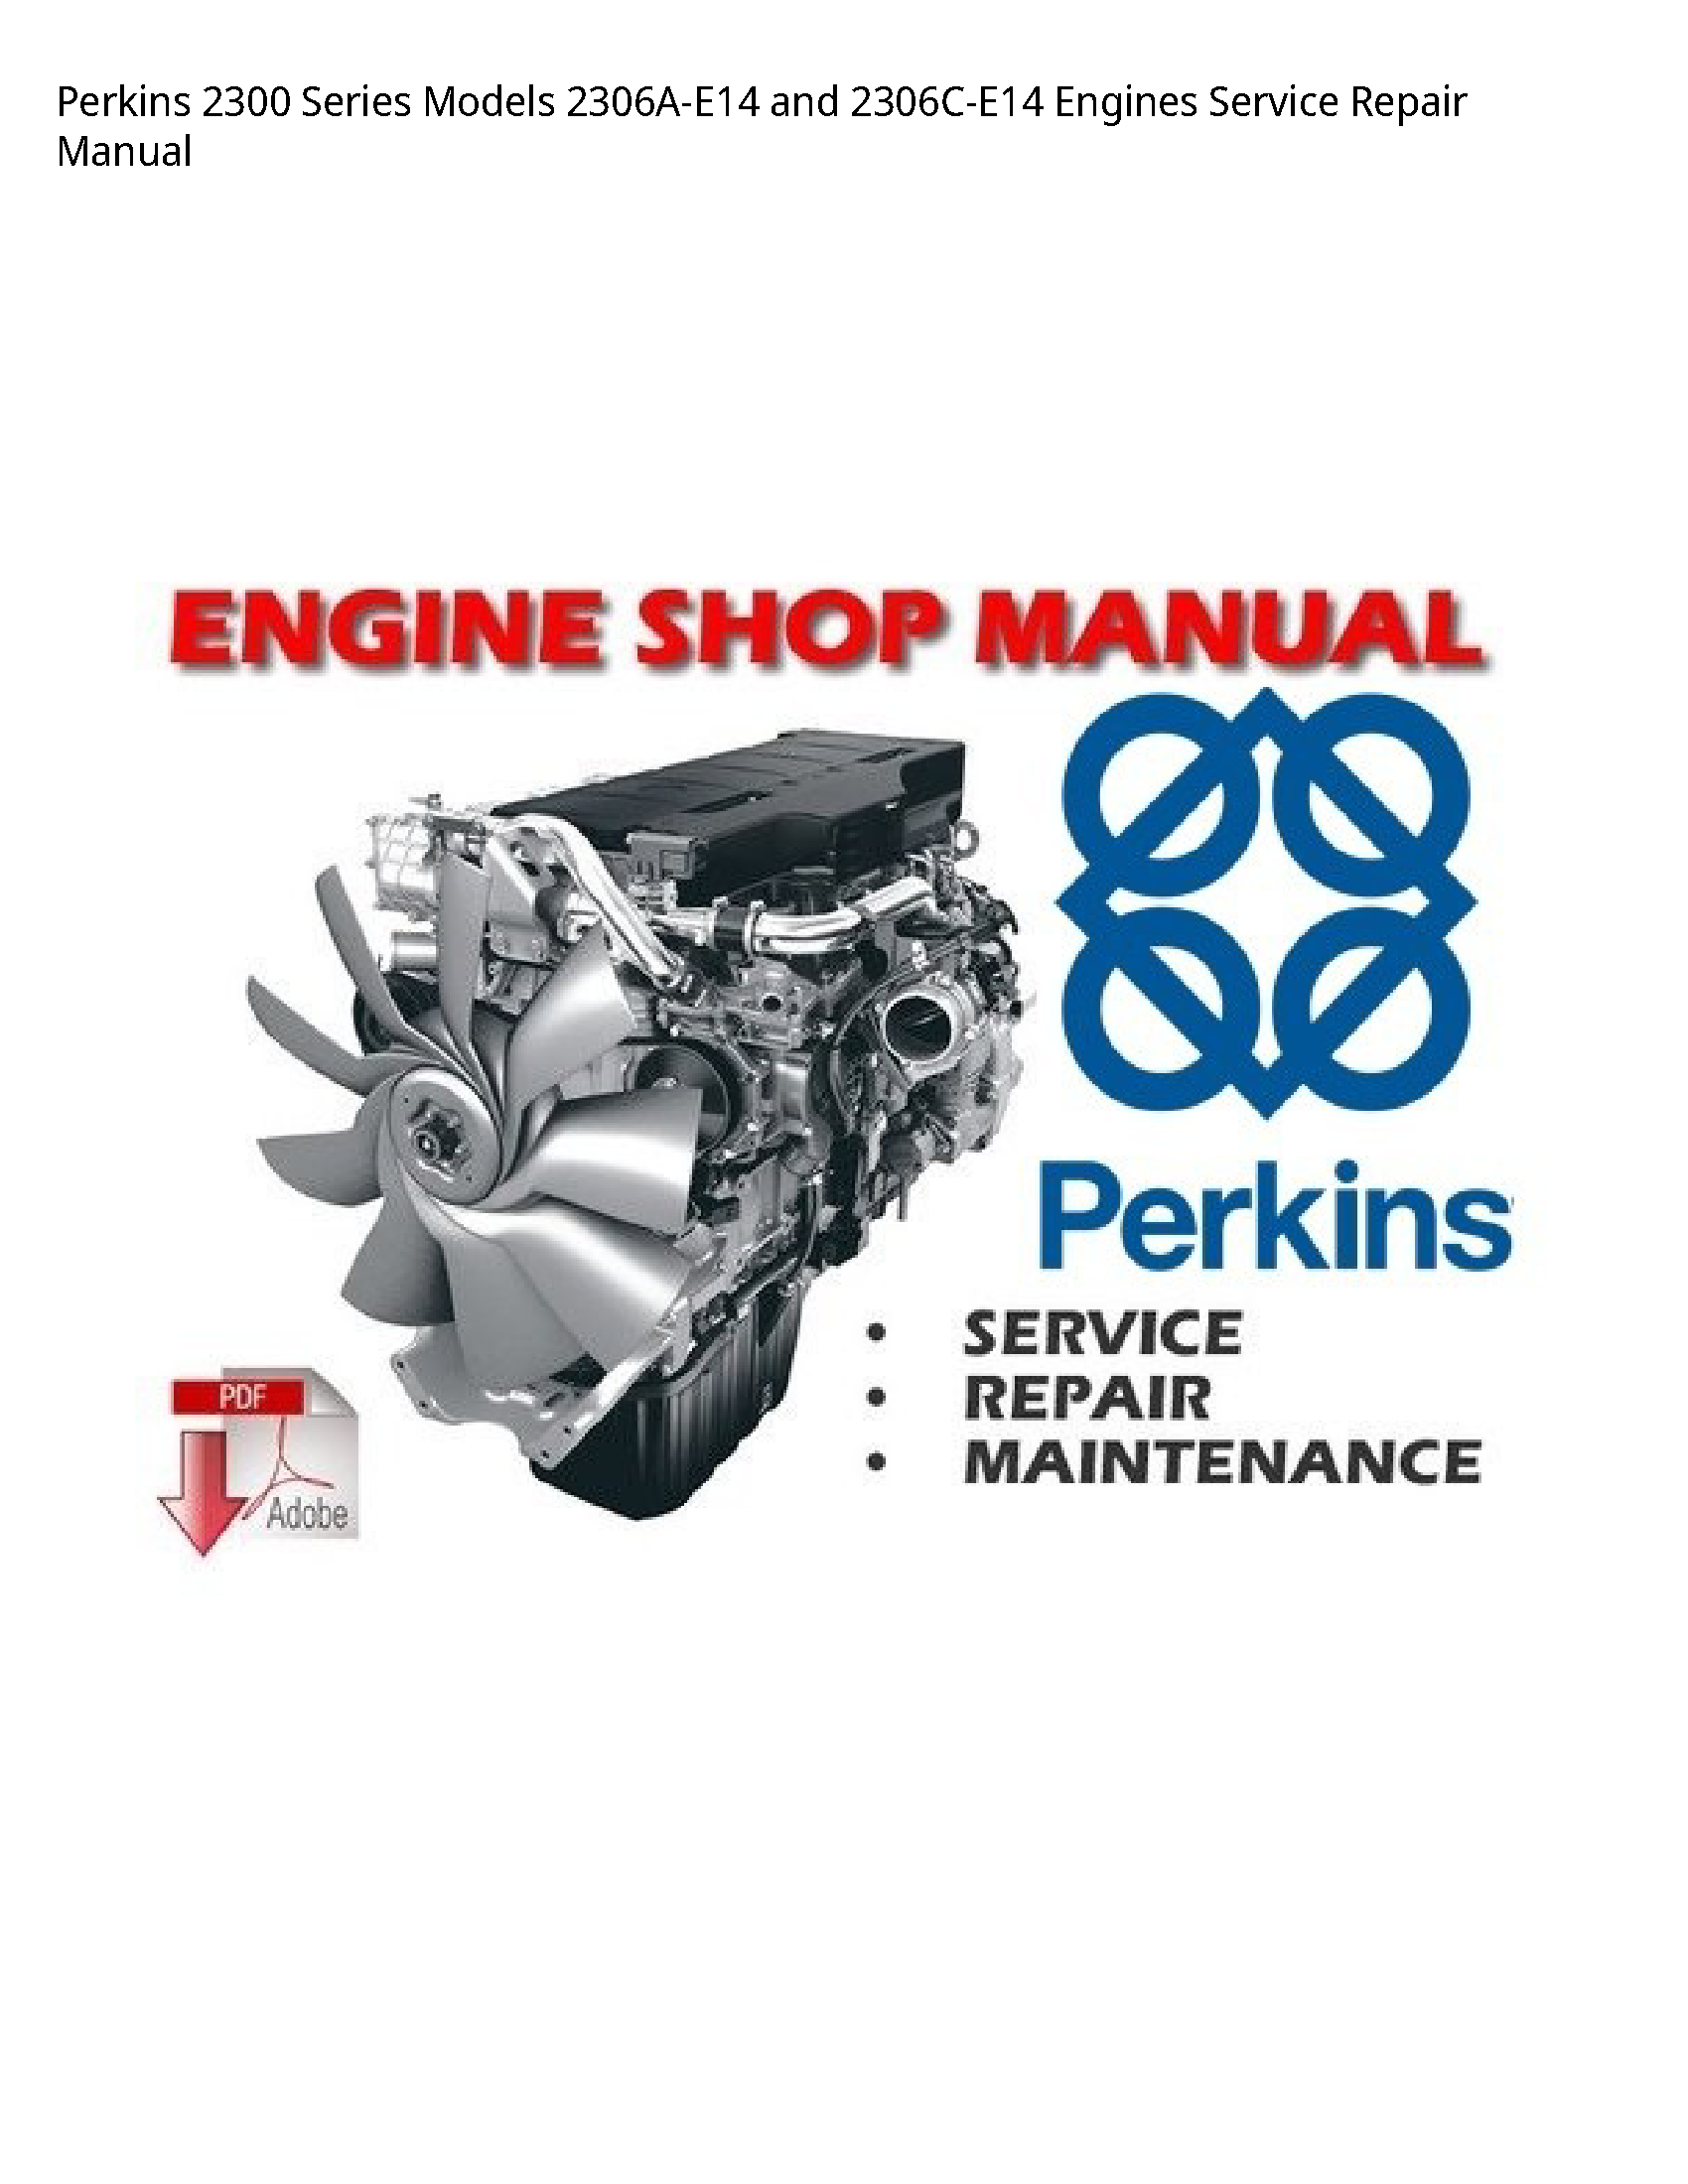 Perkins 2300 Series  Engines manual